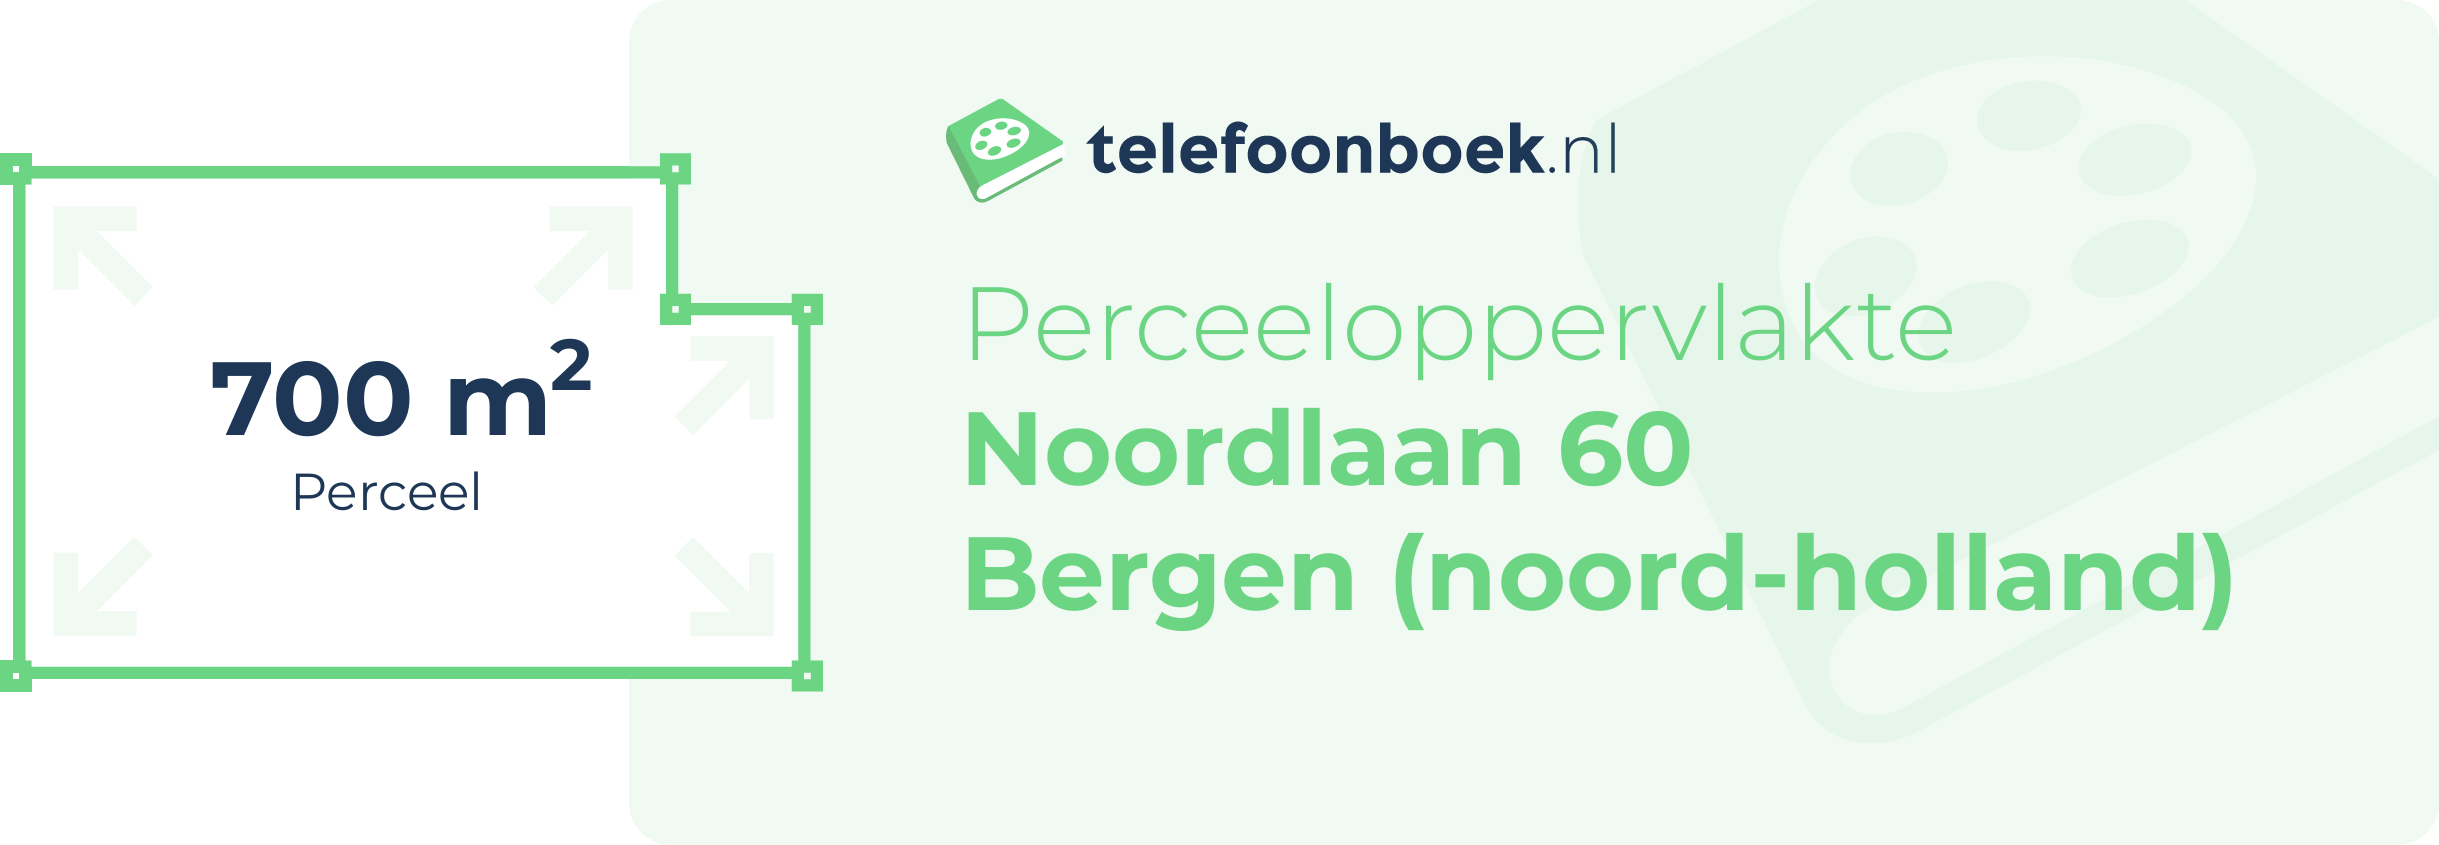 Perceeloppervlakte Noordlaan 60 Bergen (Noord-Holland)